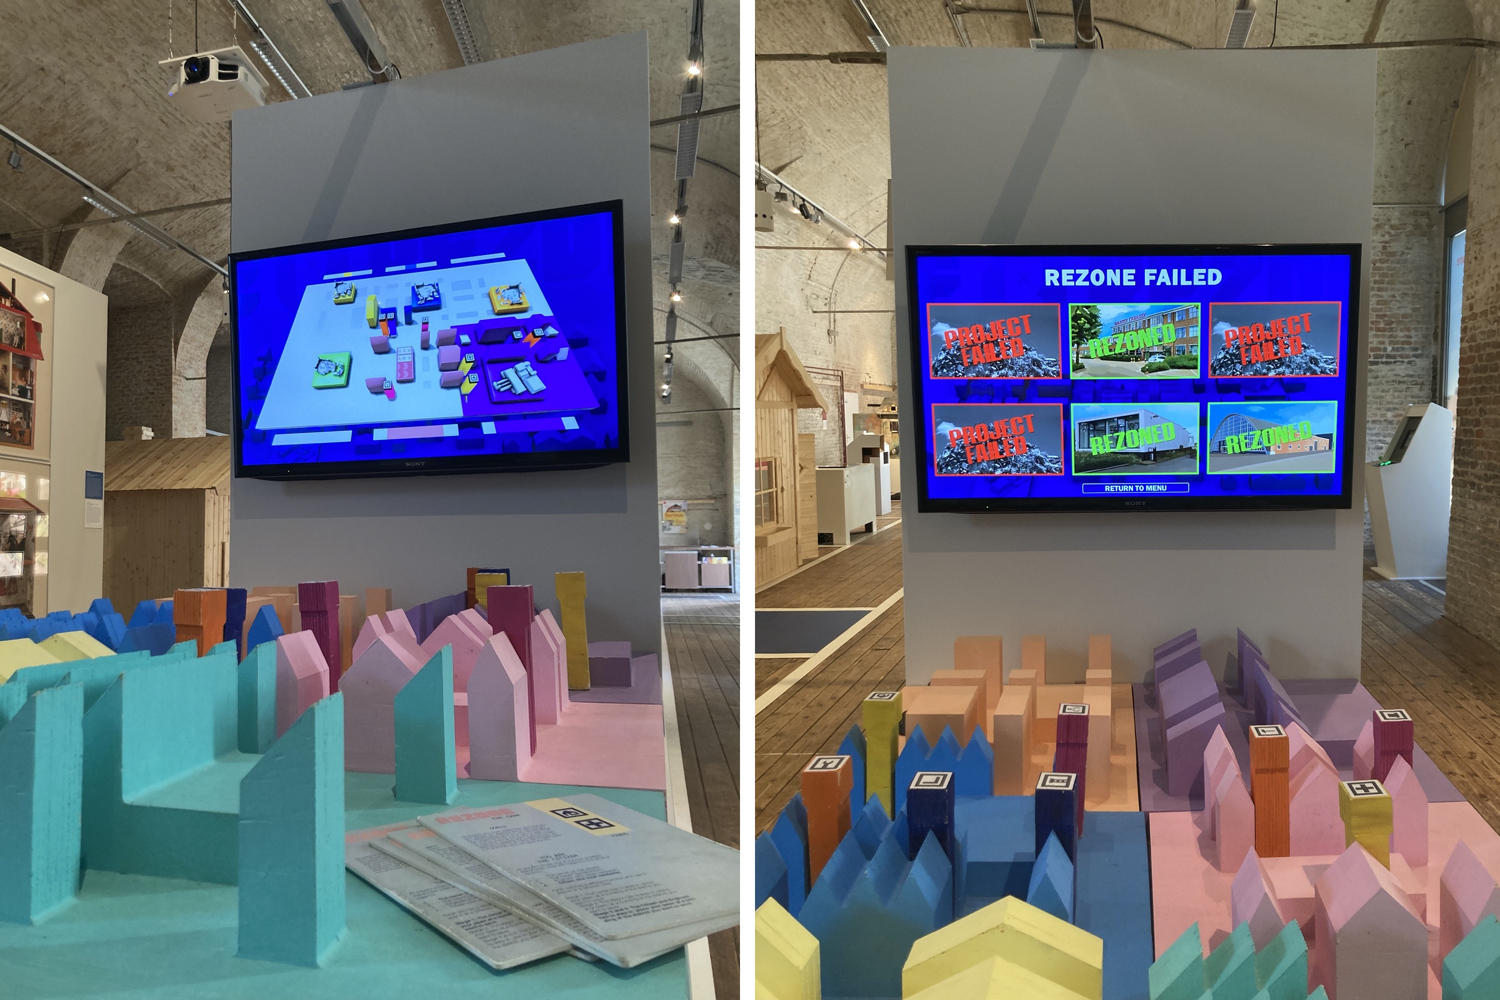 zwei Ansichten des Spiels Rezone, links das Spiel mit den Anleitungskarten im Vordergrund, dahinter der Monitor, der die Spielfläche digital abbildet, rechts eine Frontalansicht des Spiels mit dem Abschlussbildschirm, auf dem 3 von 6 Projekten als FAILED und weitere 3 als REZONED markiert sind